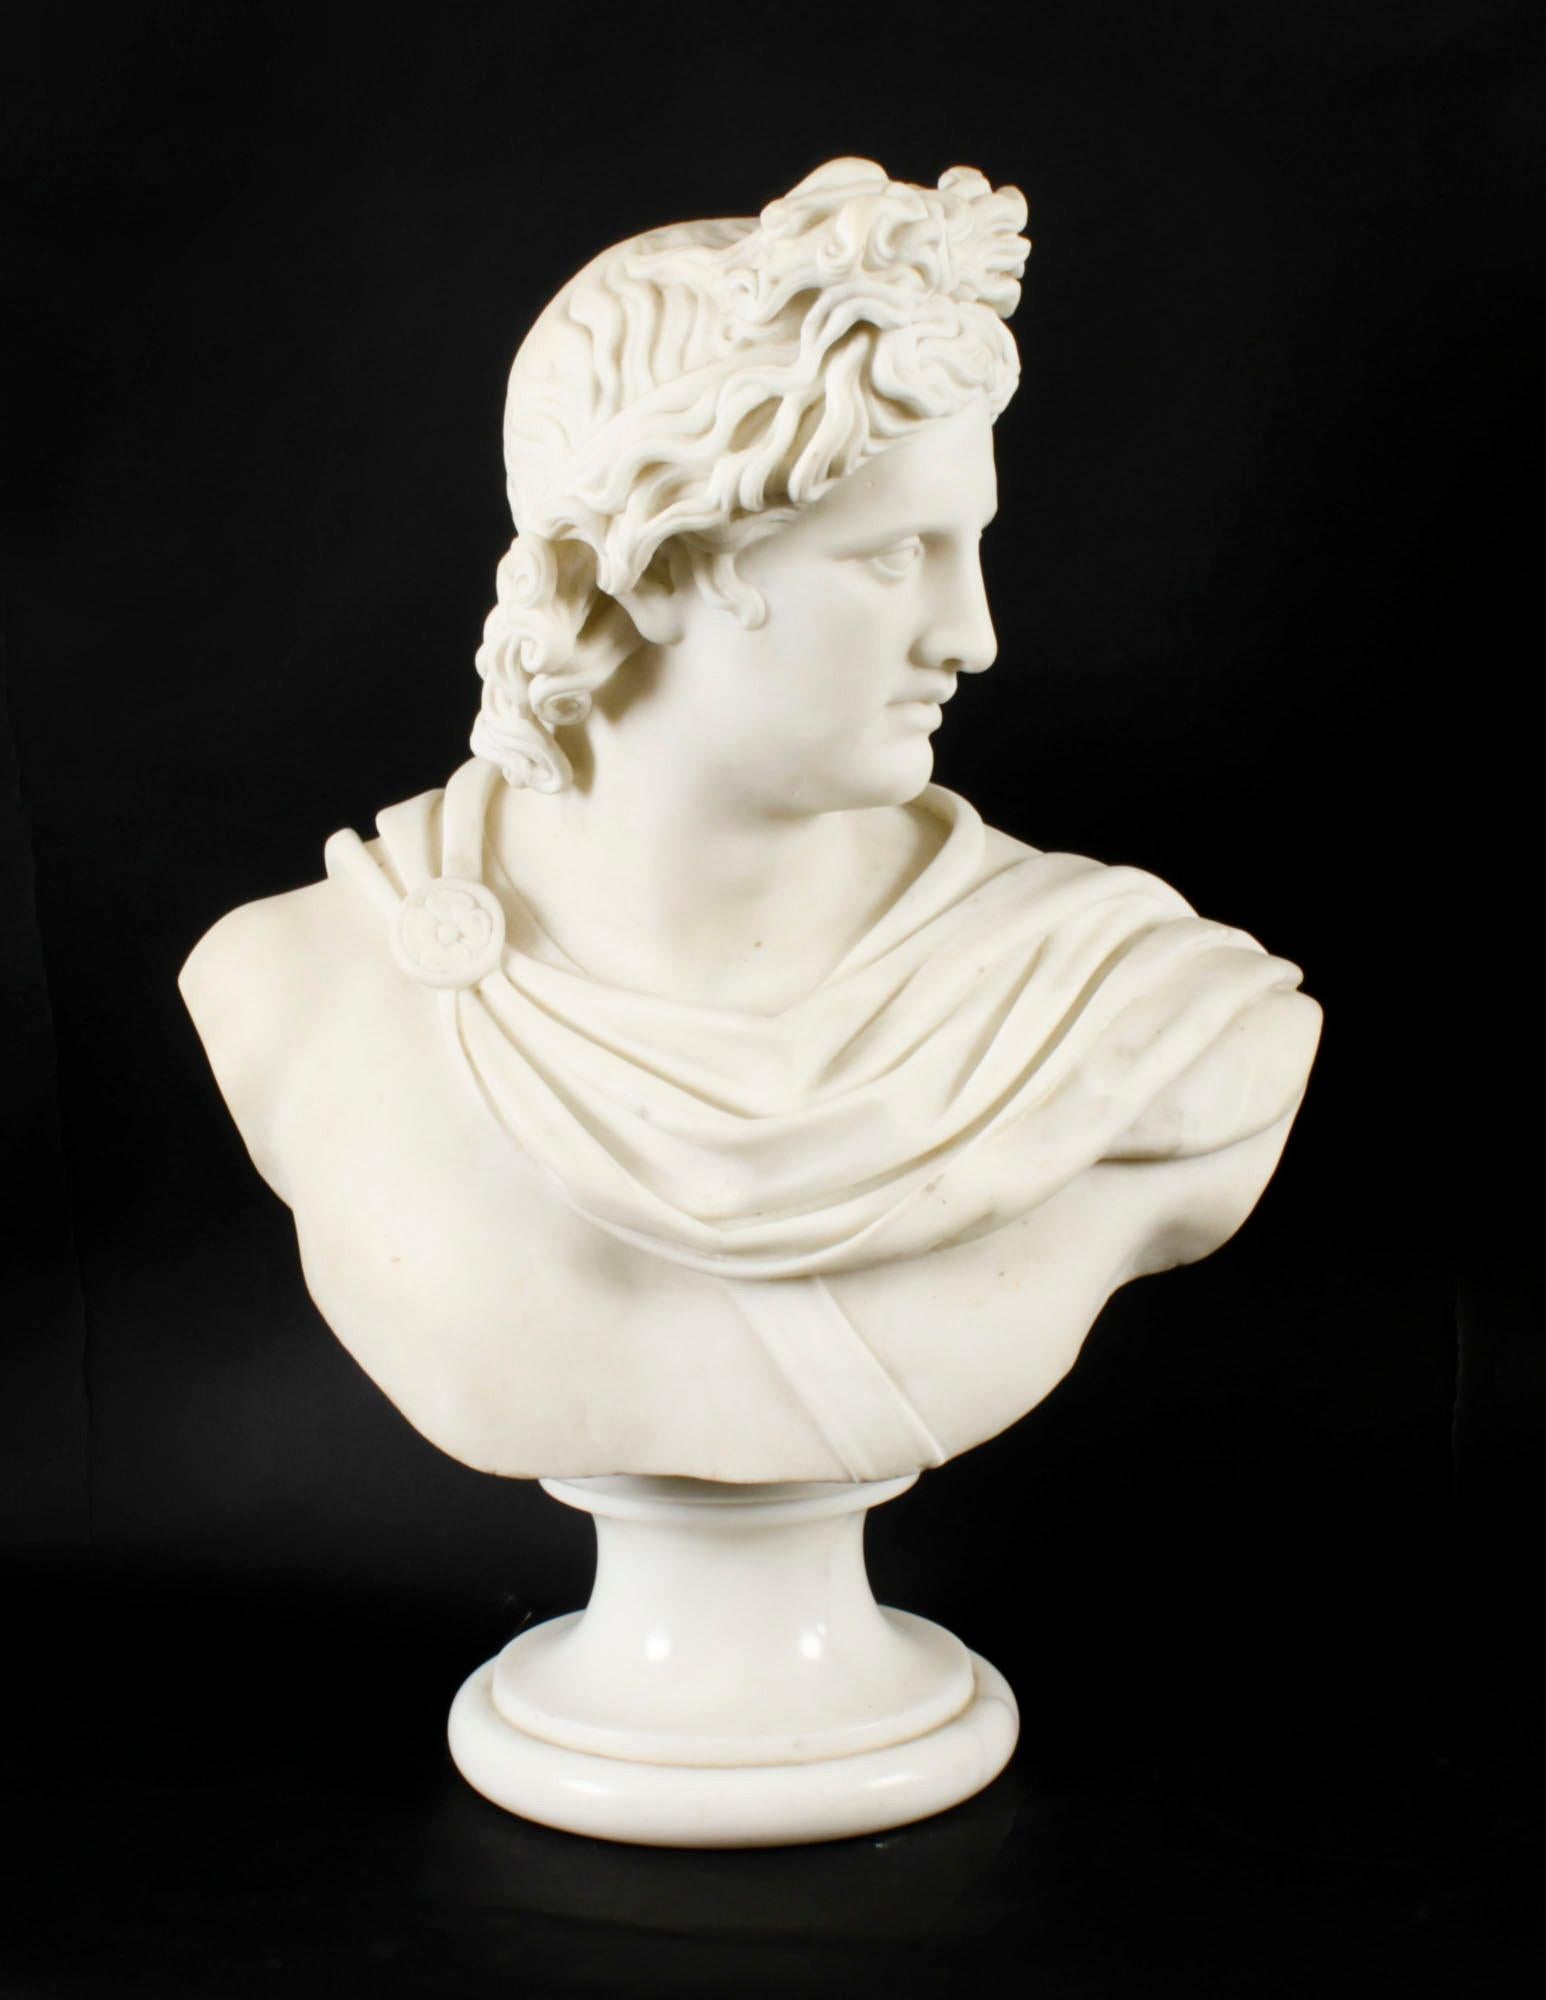 Magnifique buste en marbre italien du célèbre dieu grec Apollo de Belvedere, sur un socle, datant d'environ 1870.

Ce buste en marbre de Carrare magnifiquement sculpté a été créé en Italie au cours du XIXe siècle. Le buste s'inspire du 